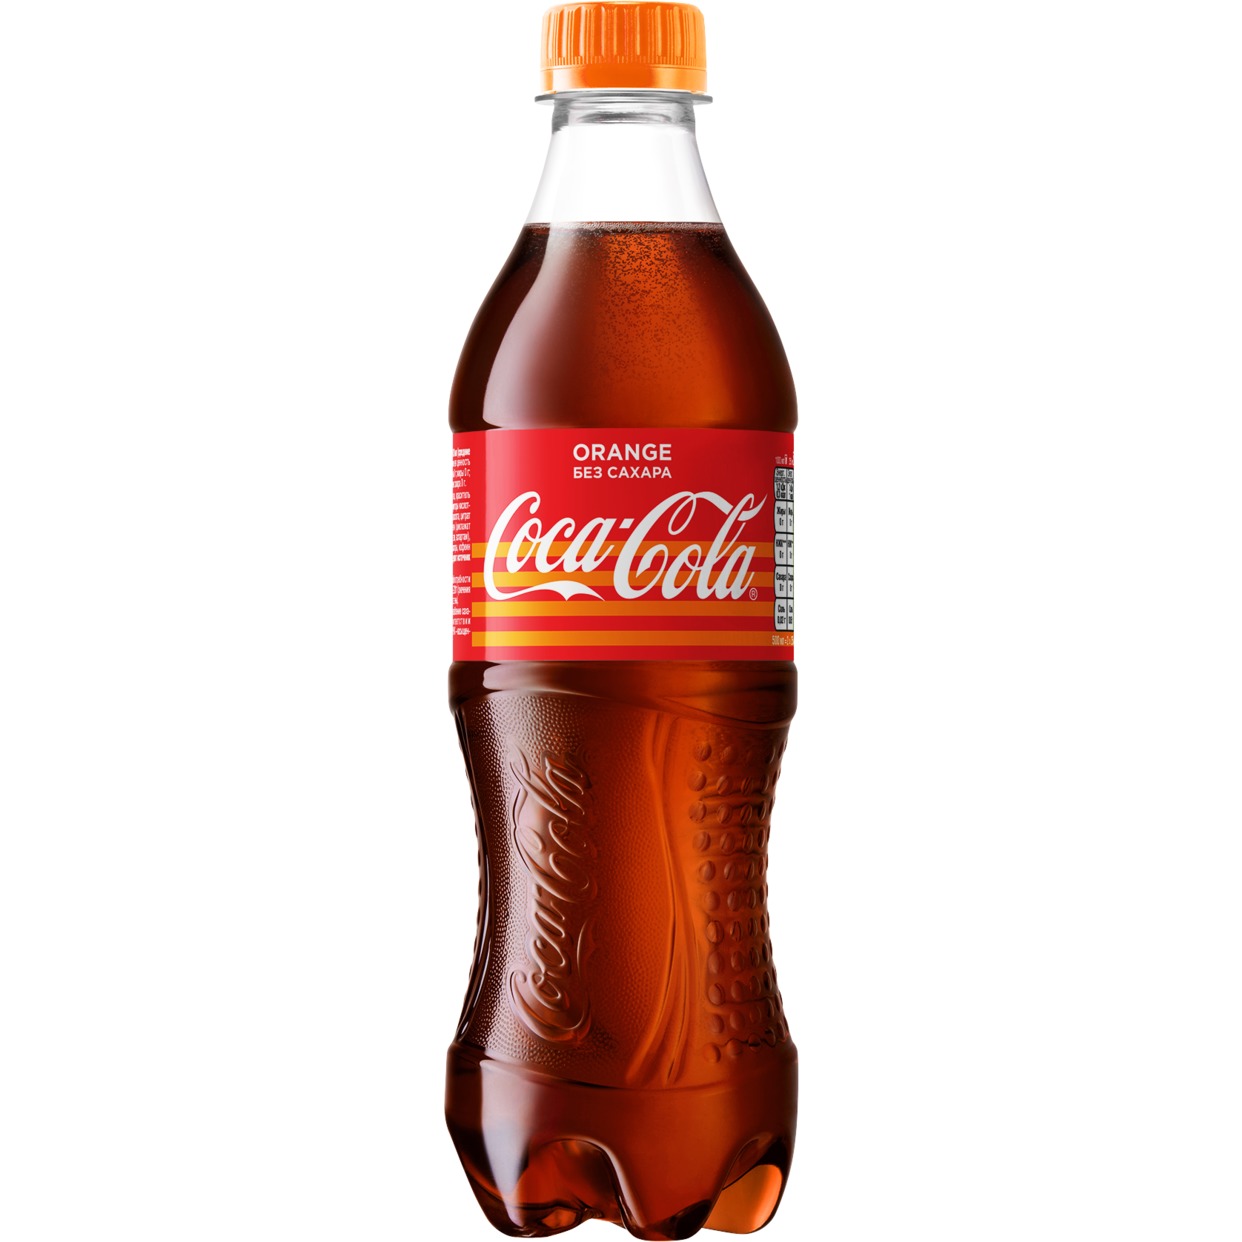 Напиток "Кока-Кола со вкусом апельсина" (Coca-Cola Orange) б/алк.сил.газ.0,5л по акции в Пятерочке